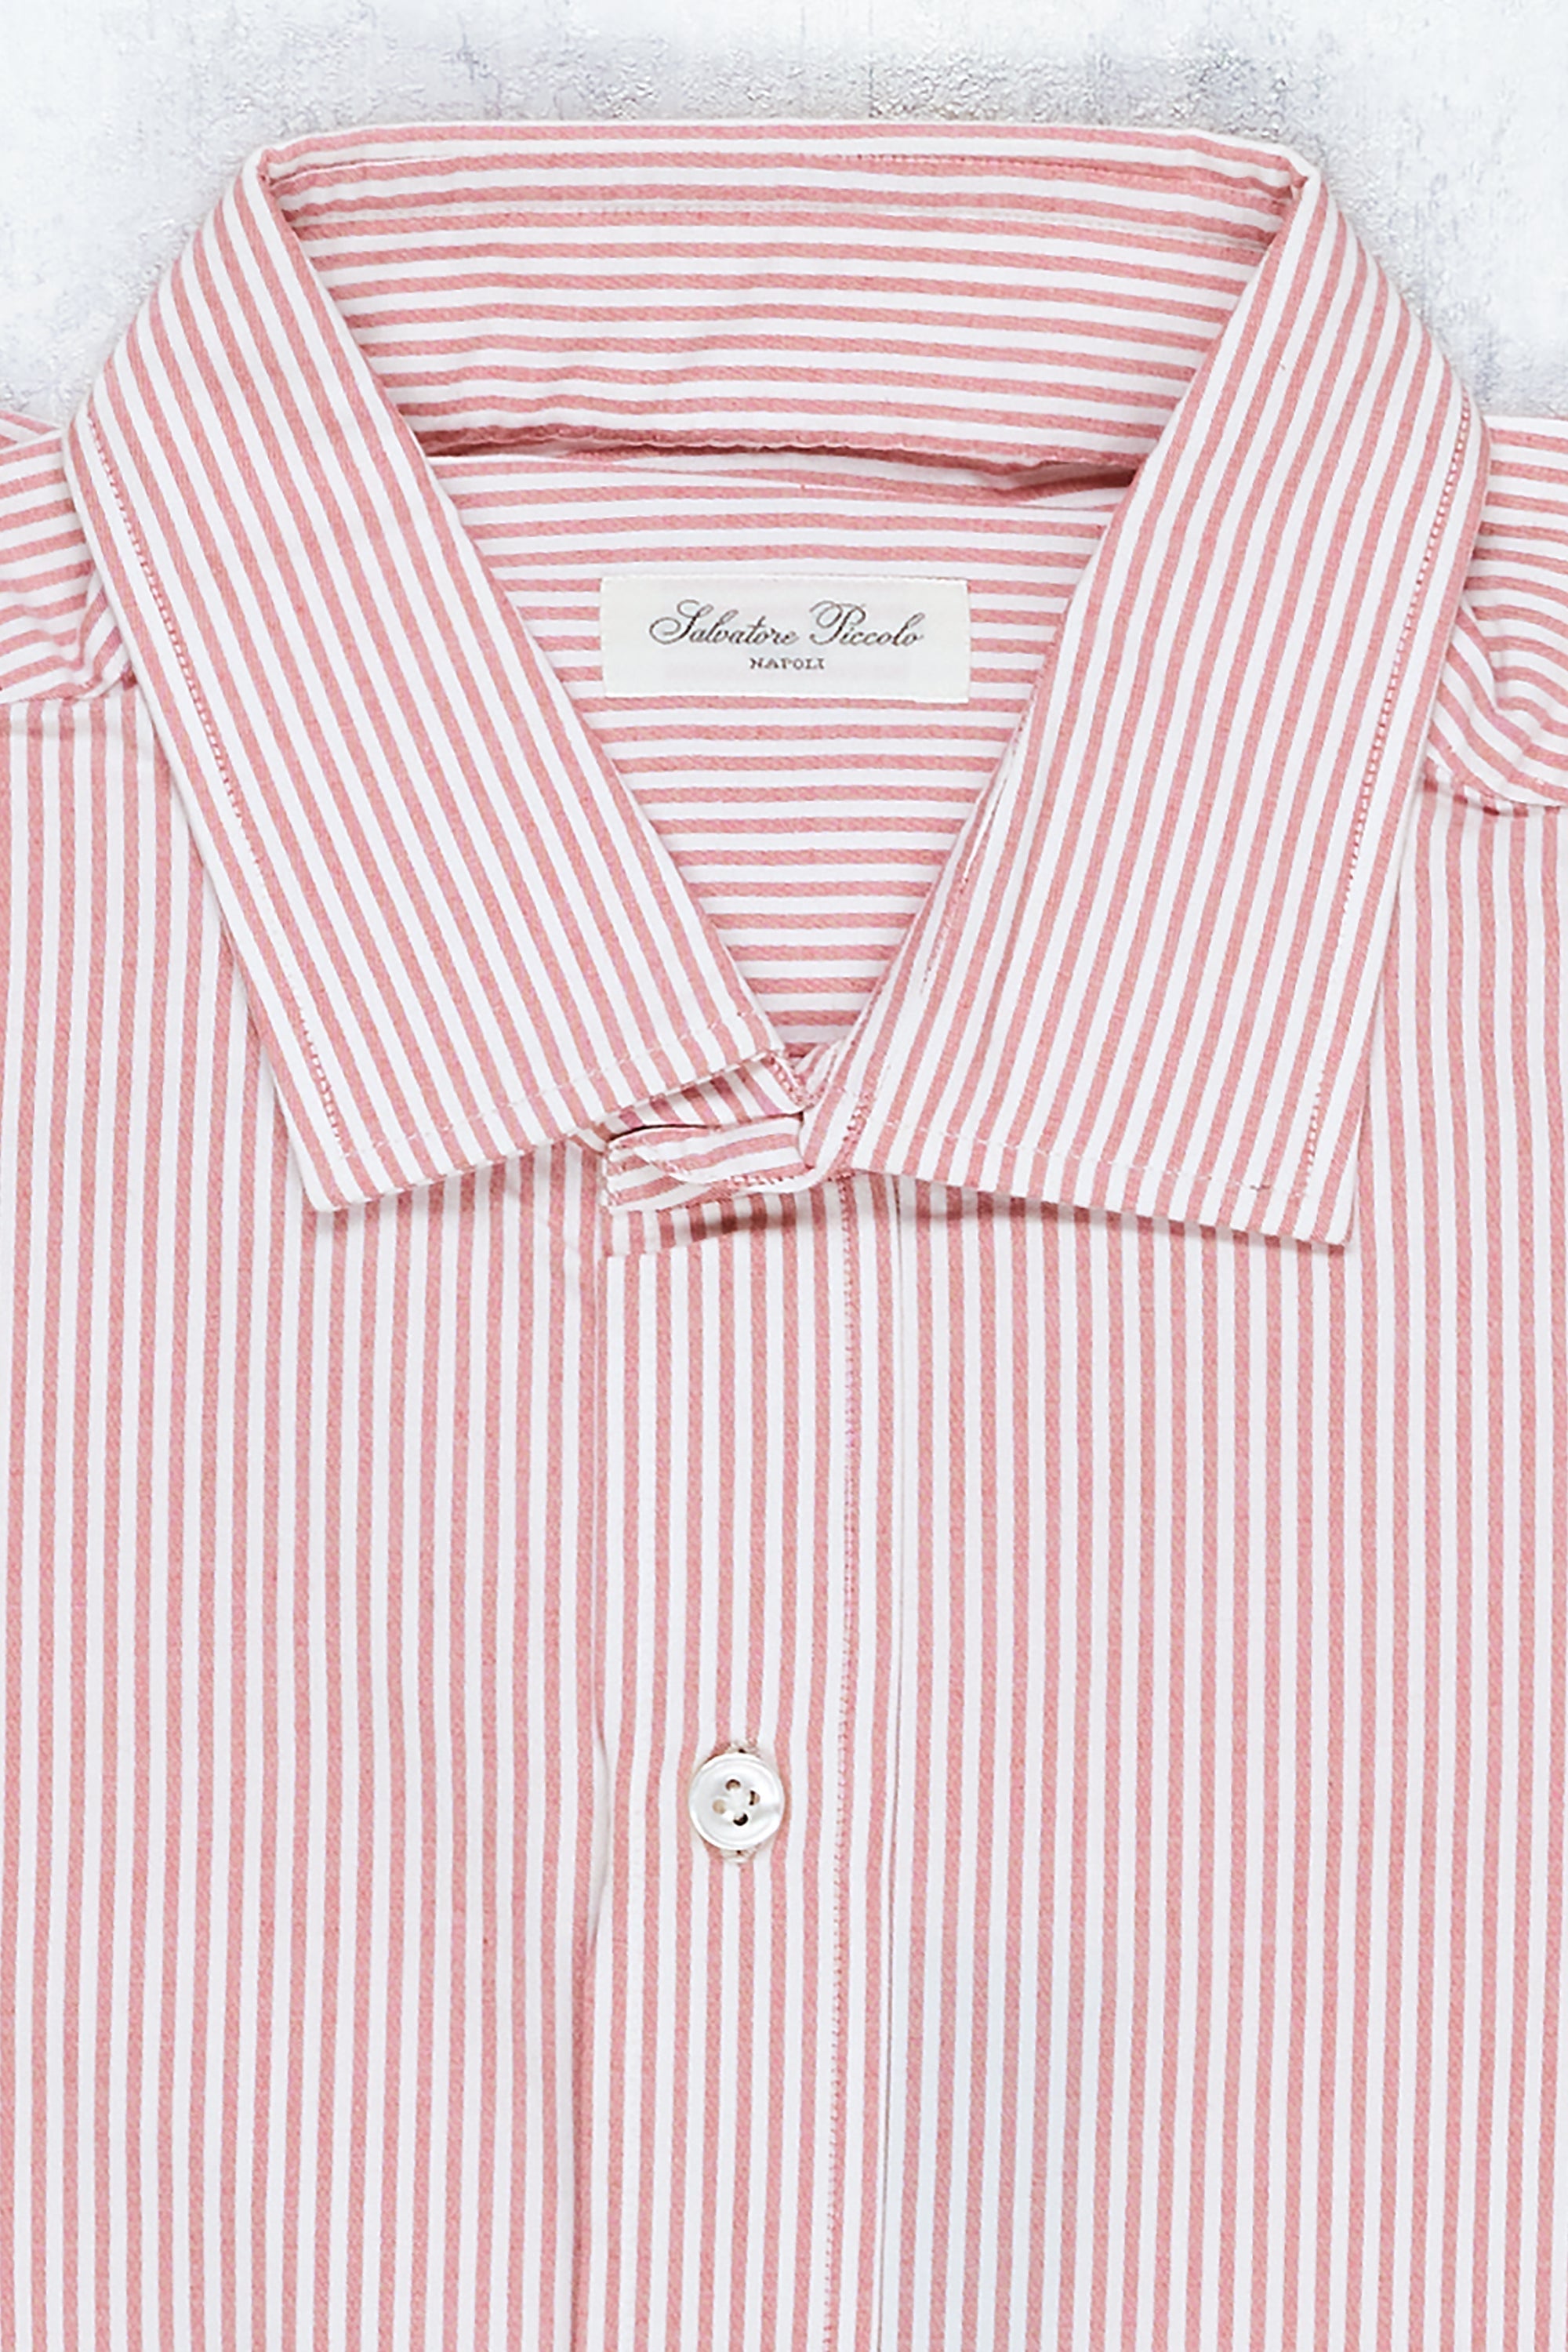 Salvatore Piccolo Red/White Stripe Cotton Spread Collar Shirt